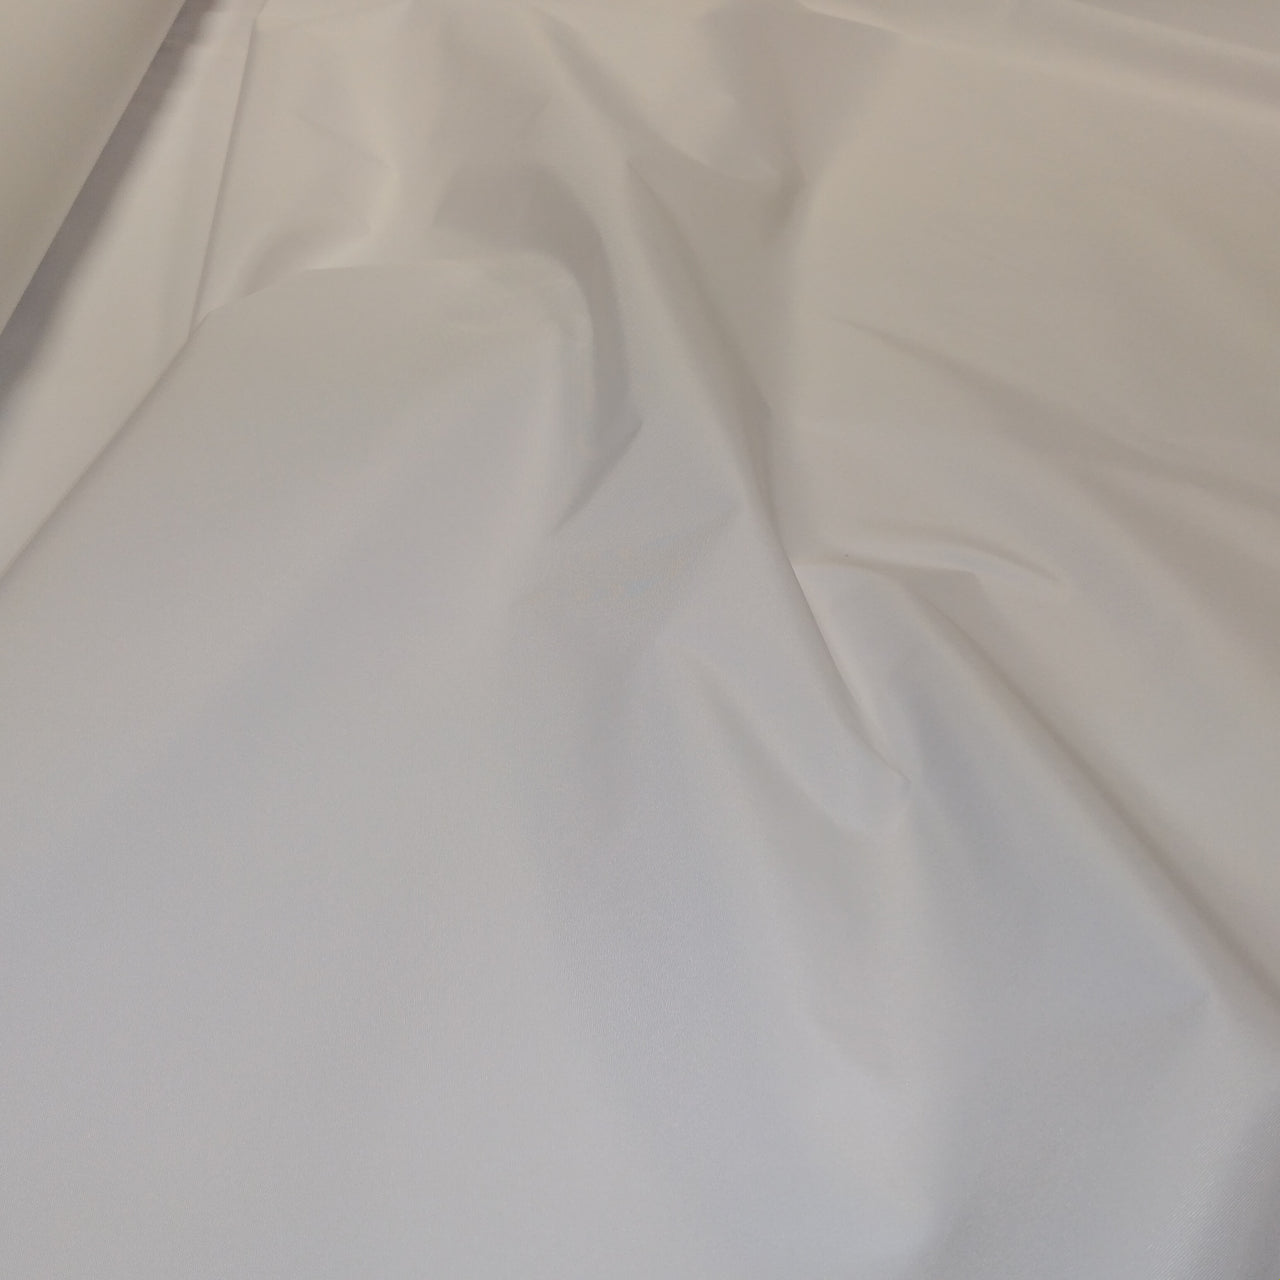 Sublimationsgewebe – überlegenes PU-beschichtetes wasserdichtes Material – vorbereitet für Druckgewebe